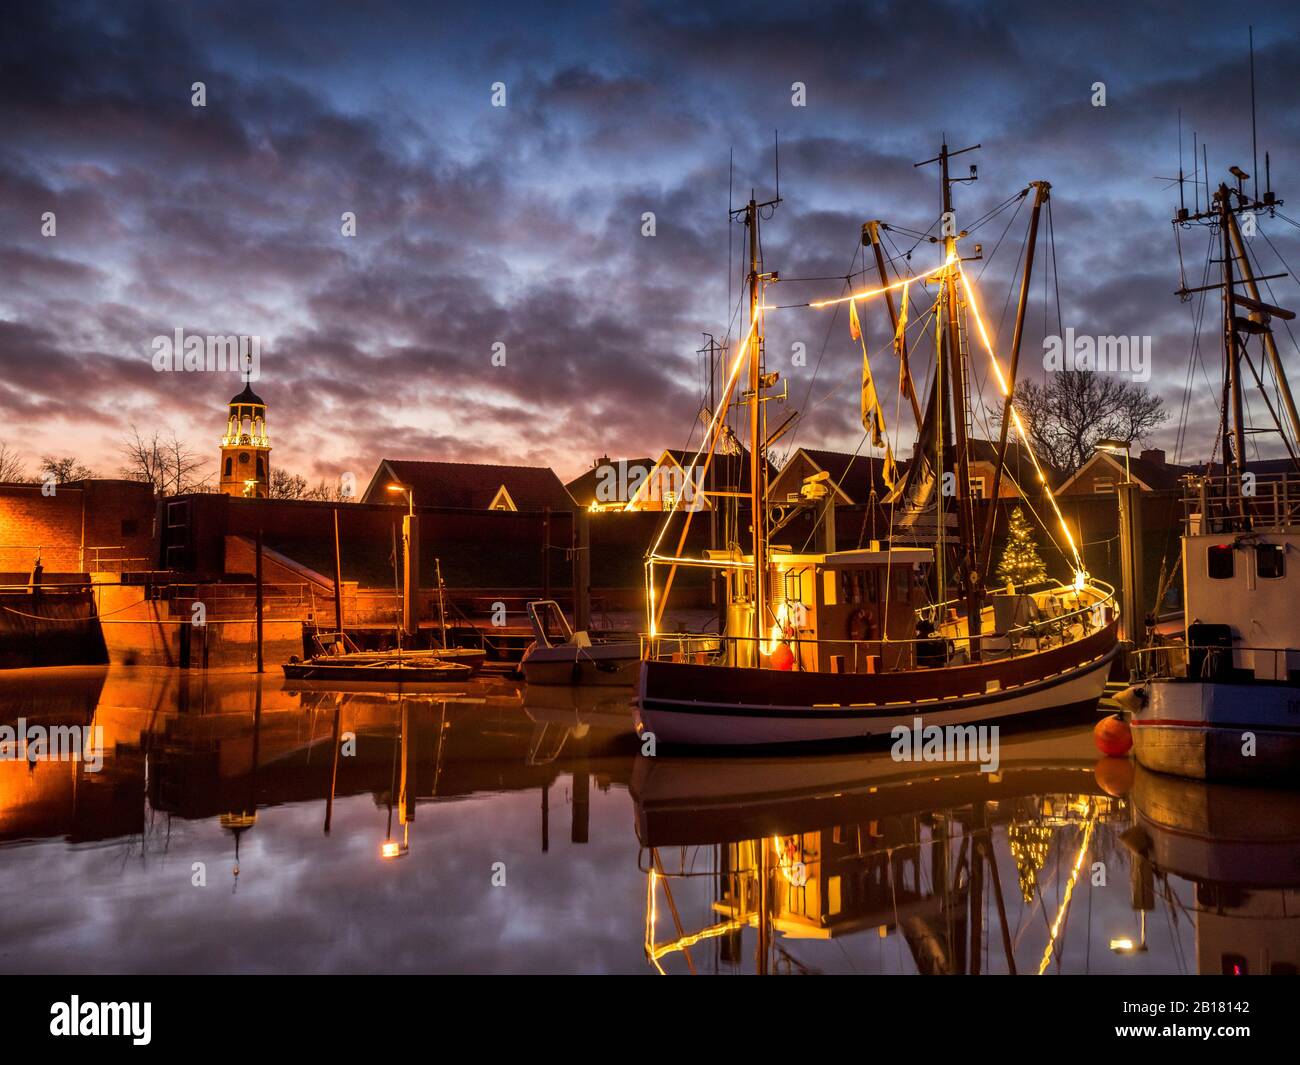 Germany, Lower Saxony, Landkreis Leer, Friesland, Ditzum, Ship illuminated for Christmas at dusk Stock Photo